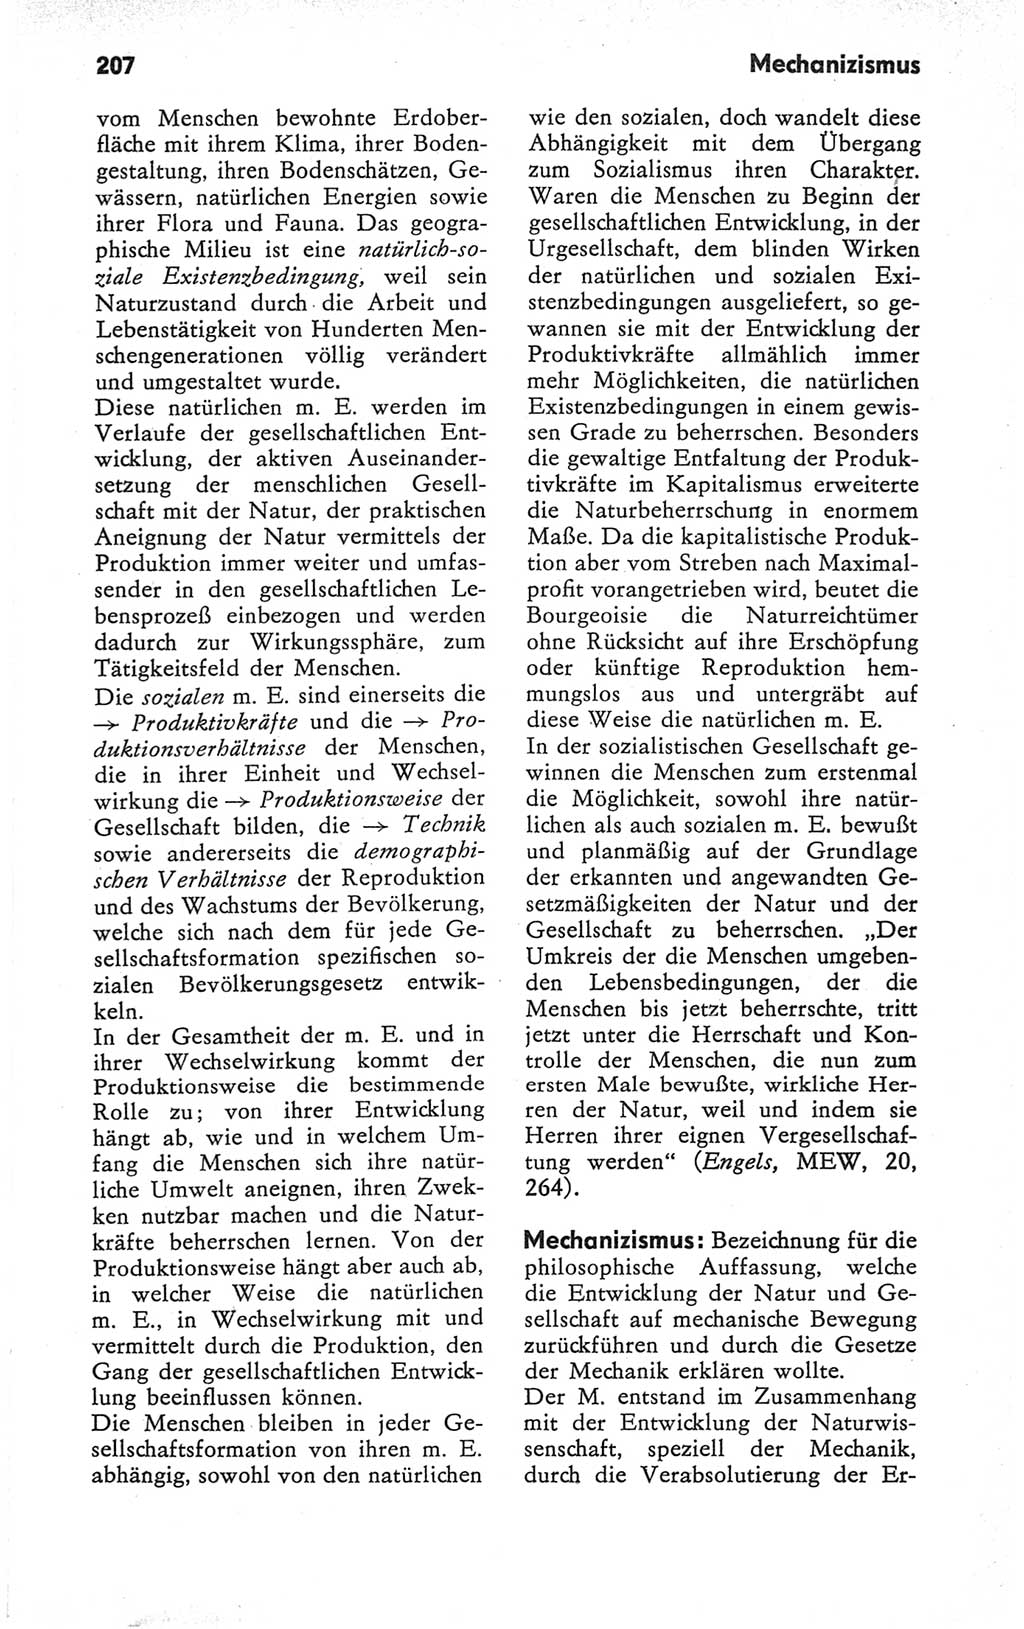 Kleines Wörterbuch der marxistisch-leninistischen Philosophie [Deutsche Demokratische Republik (DDR)] 1979, Seite 207 (Kl. Wb. ML Phil. DDR 1979, S. 207)